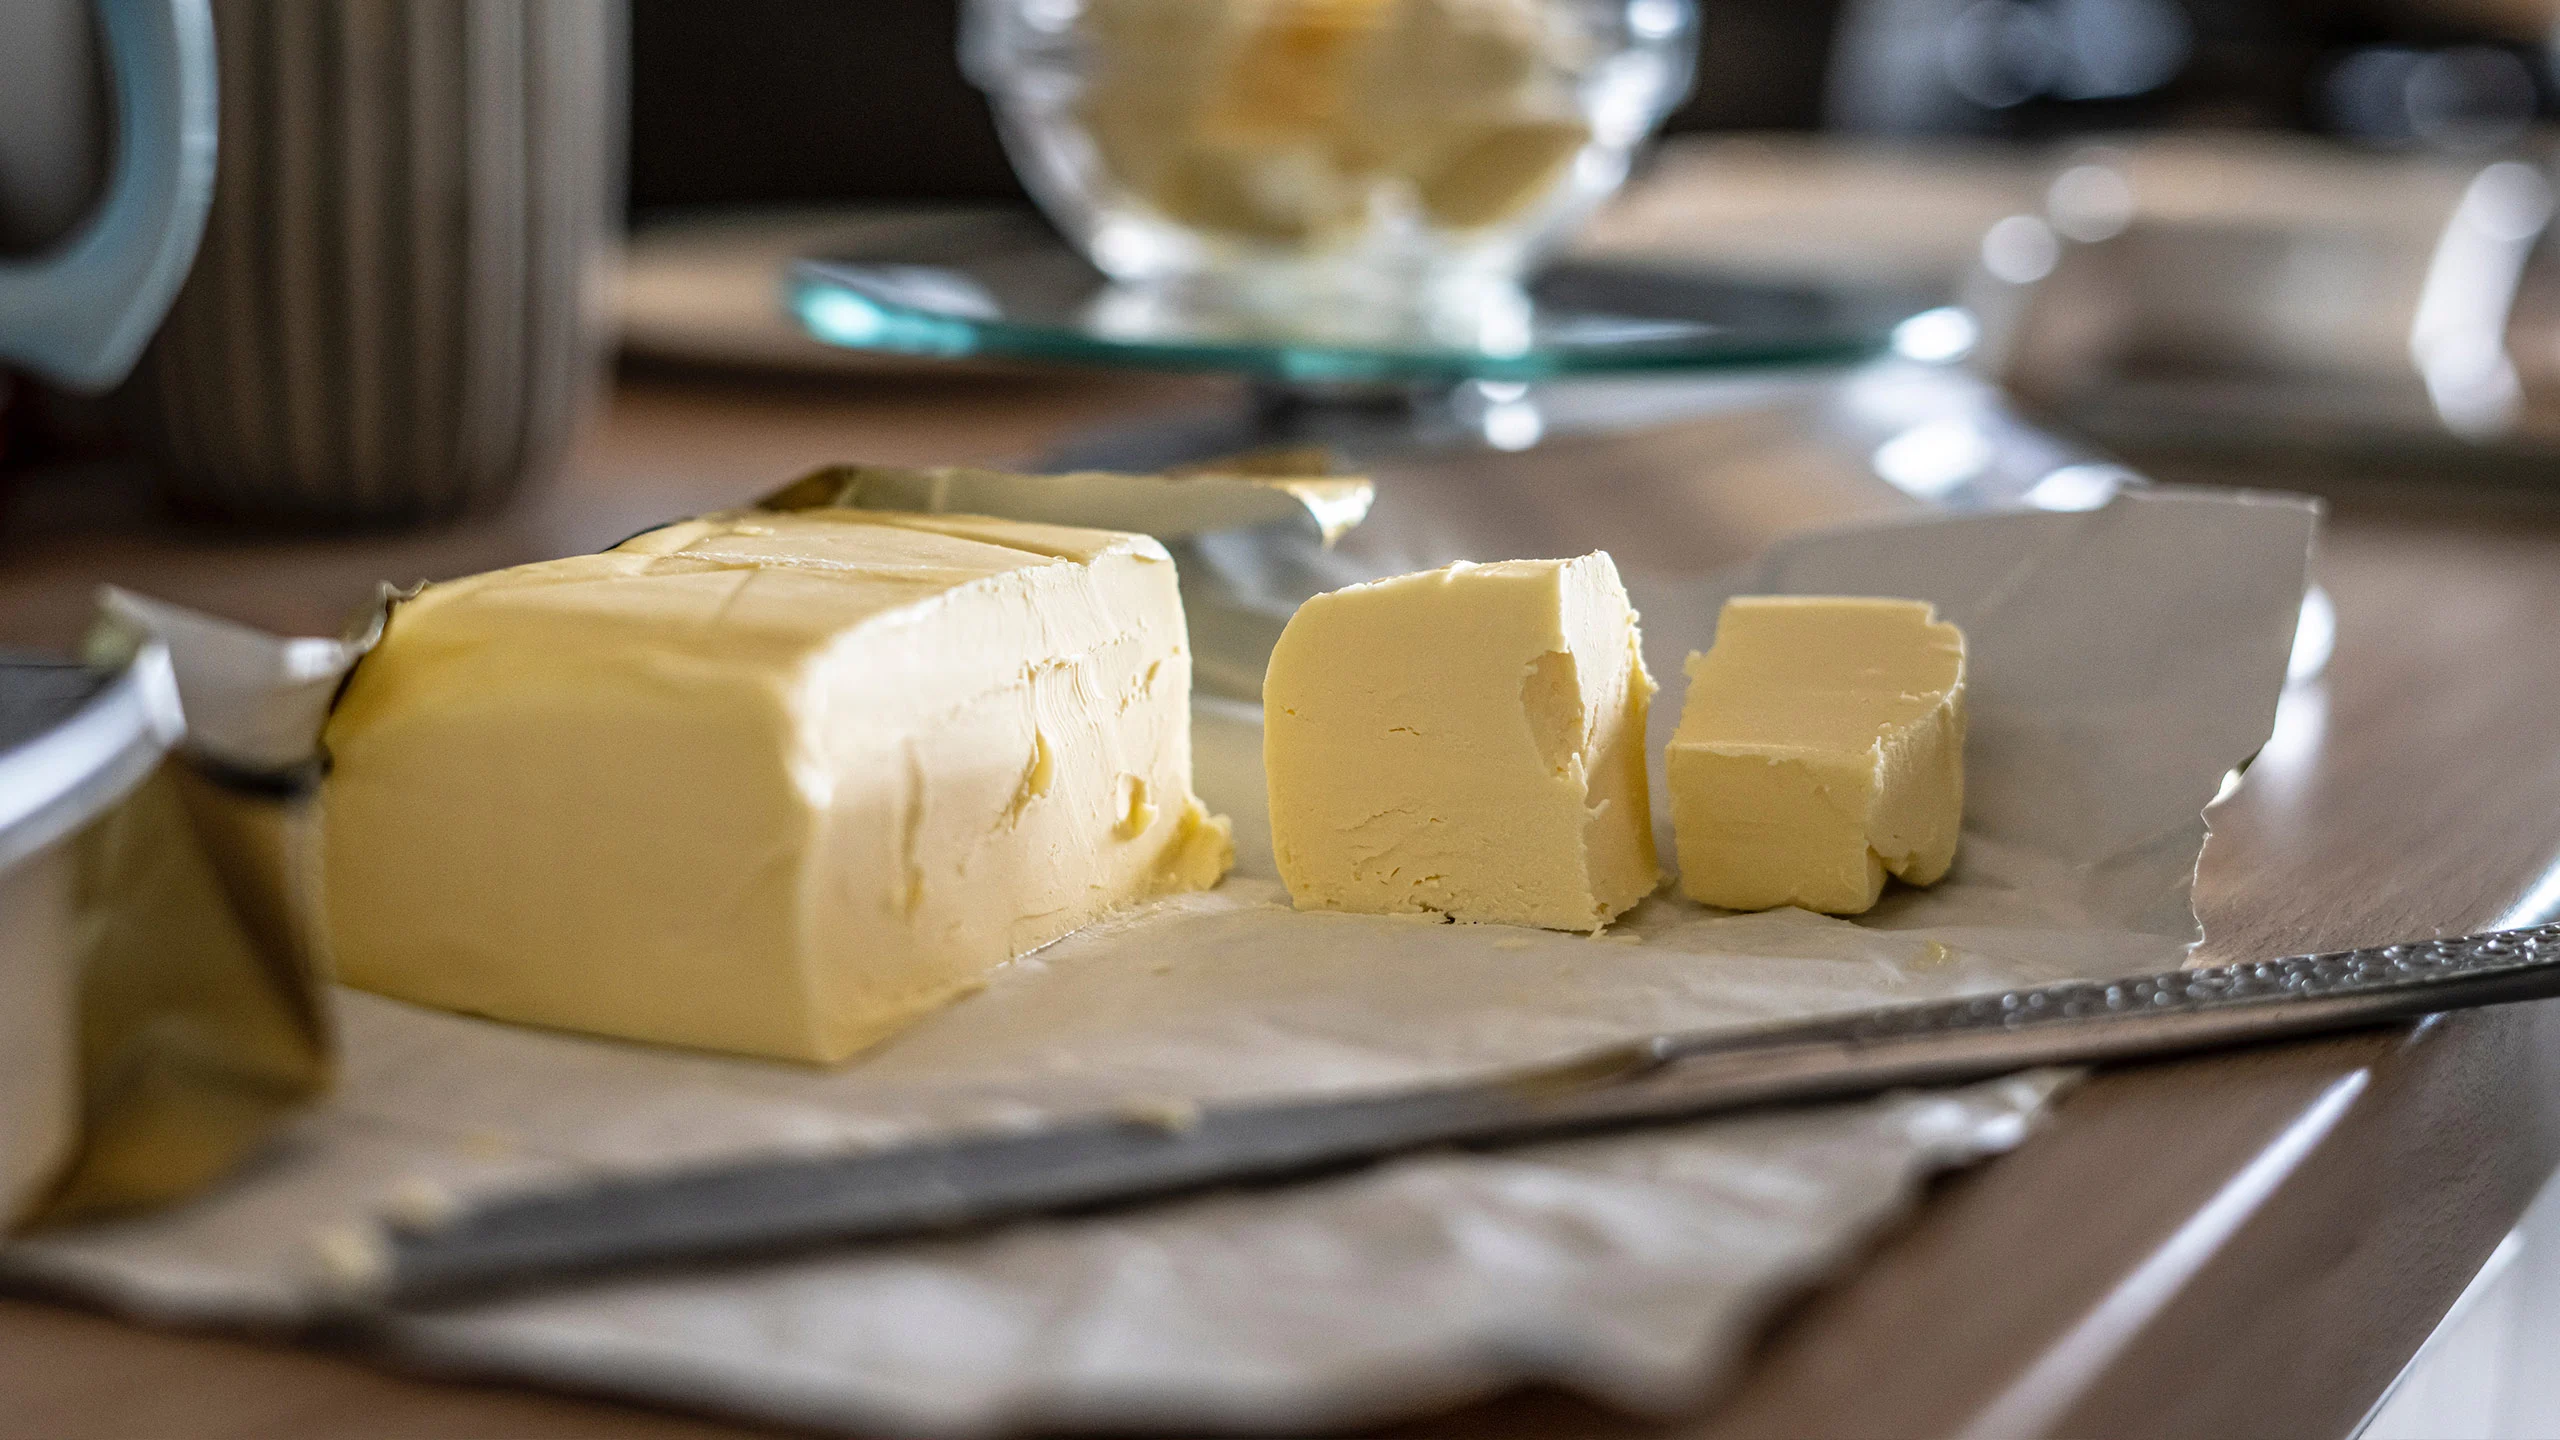 Beurre noisette, clarificada y ghee, tres formas de elevar tu mantequilla